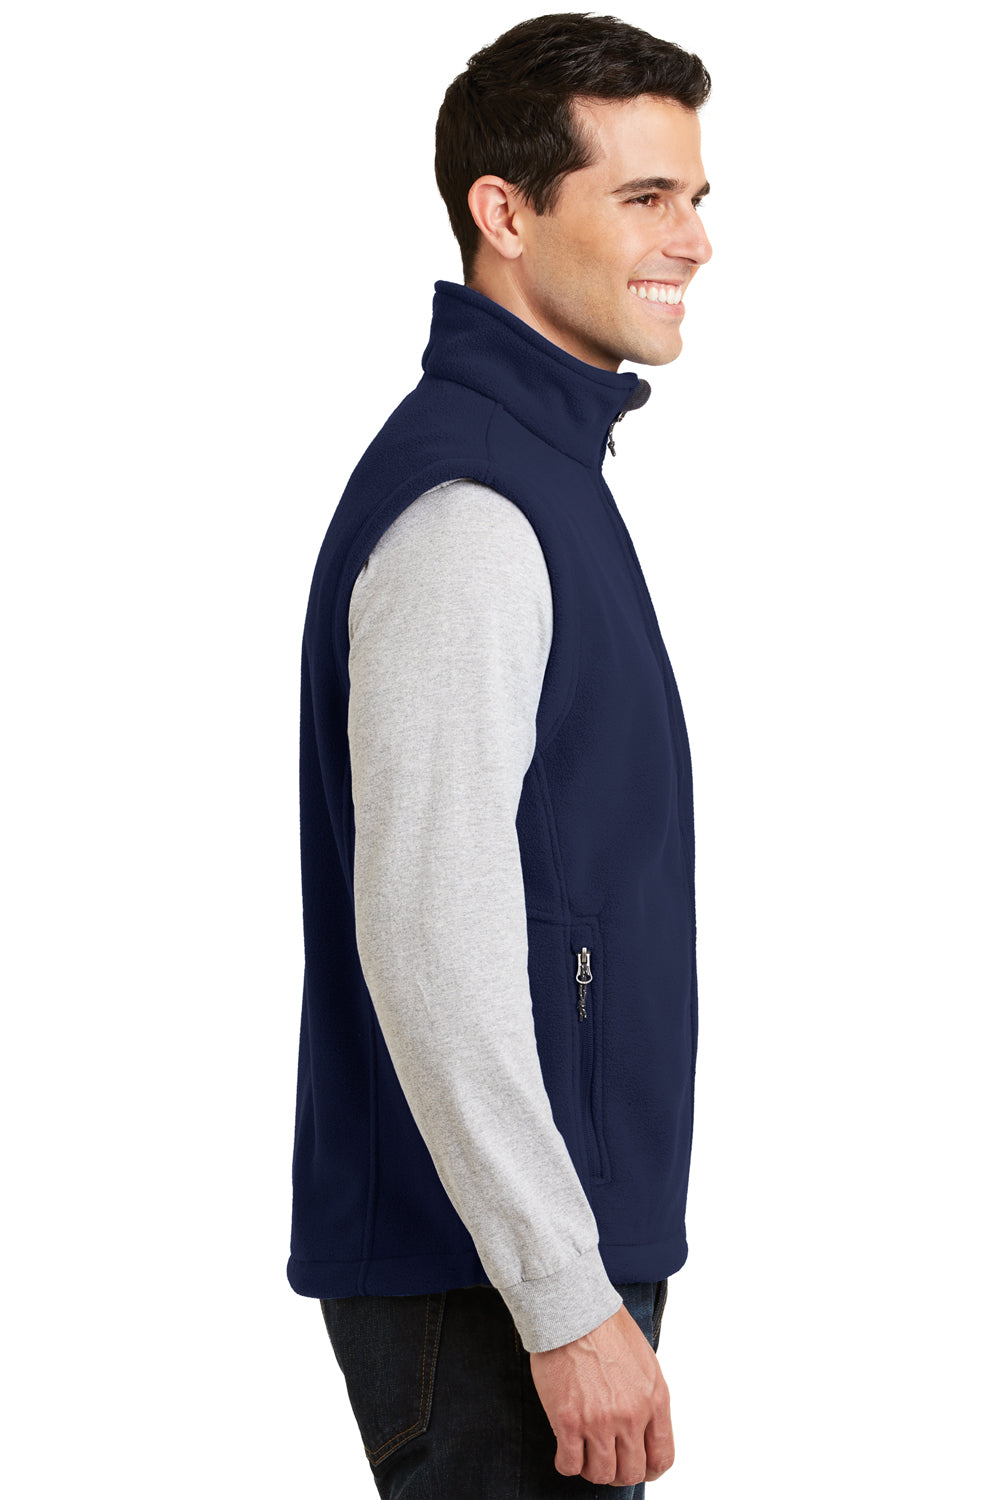 Port Authority® Ladies Value Fleece Vest. L219 for sale